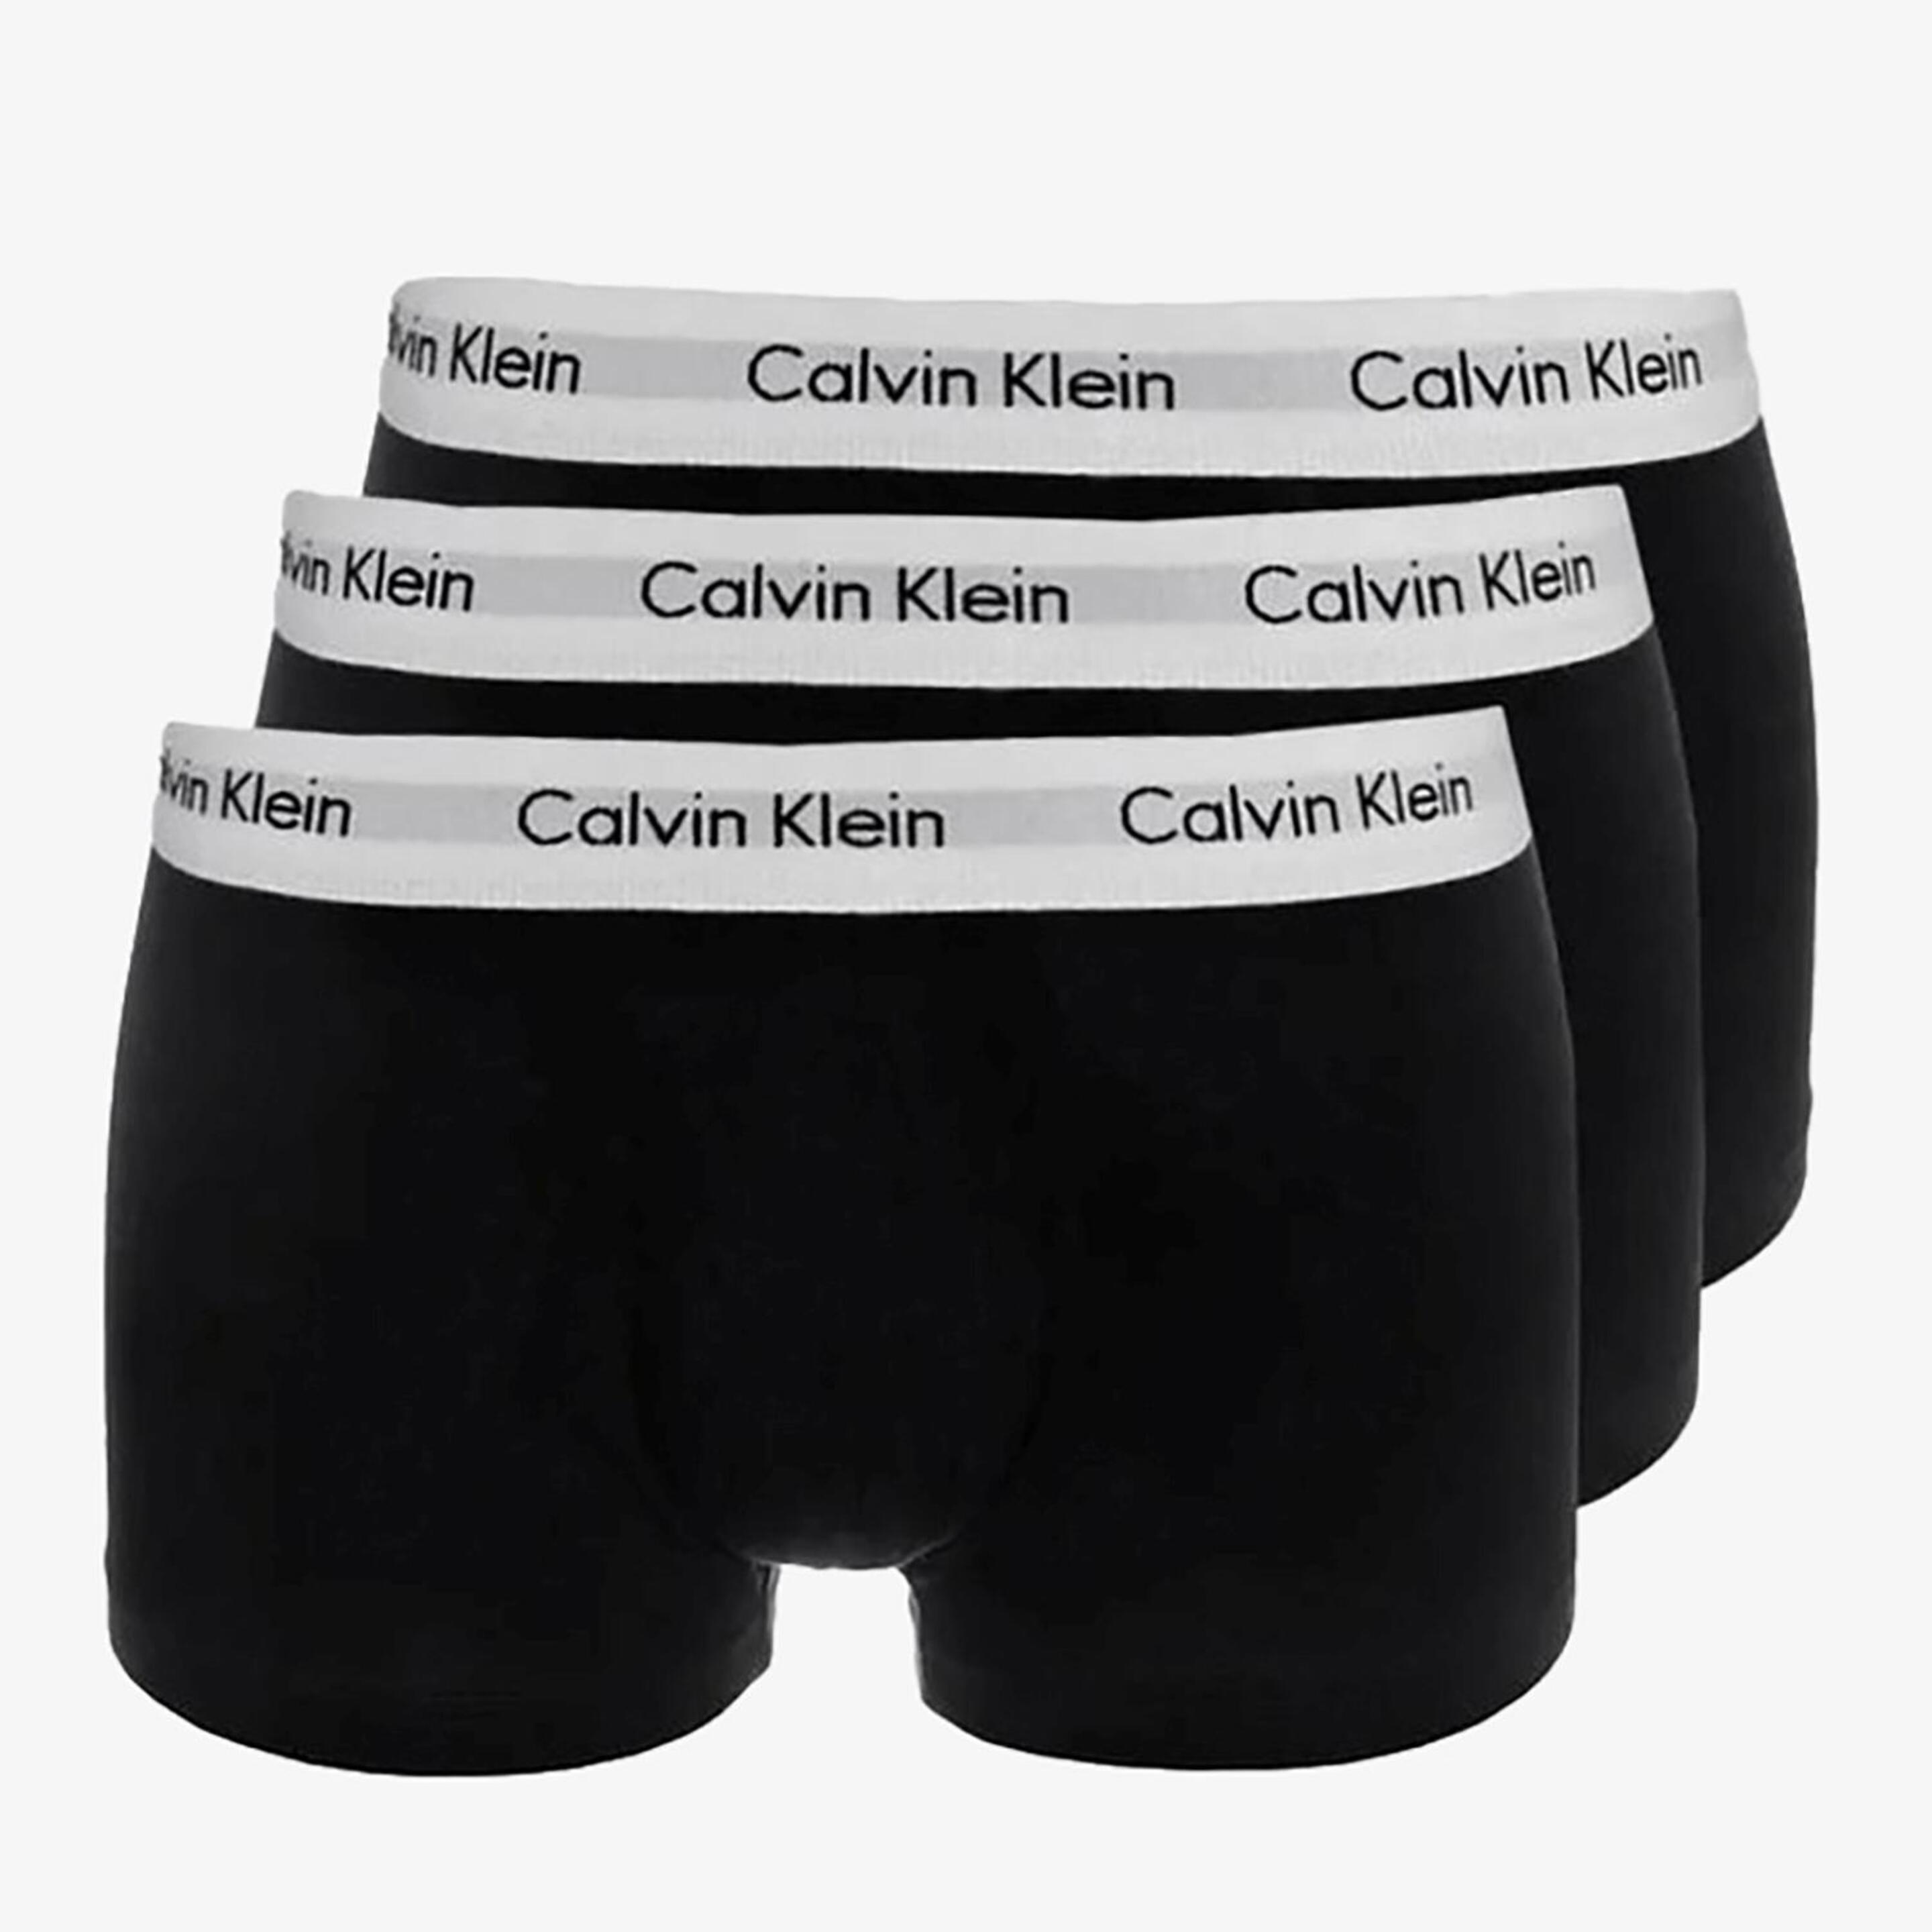 Calzoncillos Calvin Klein - Negro - Bóxer Hombre  MKP